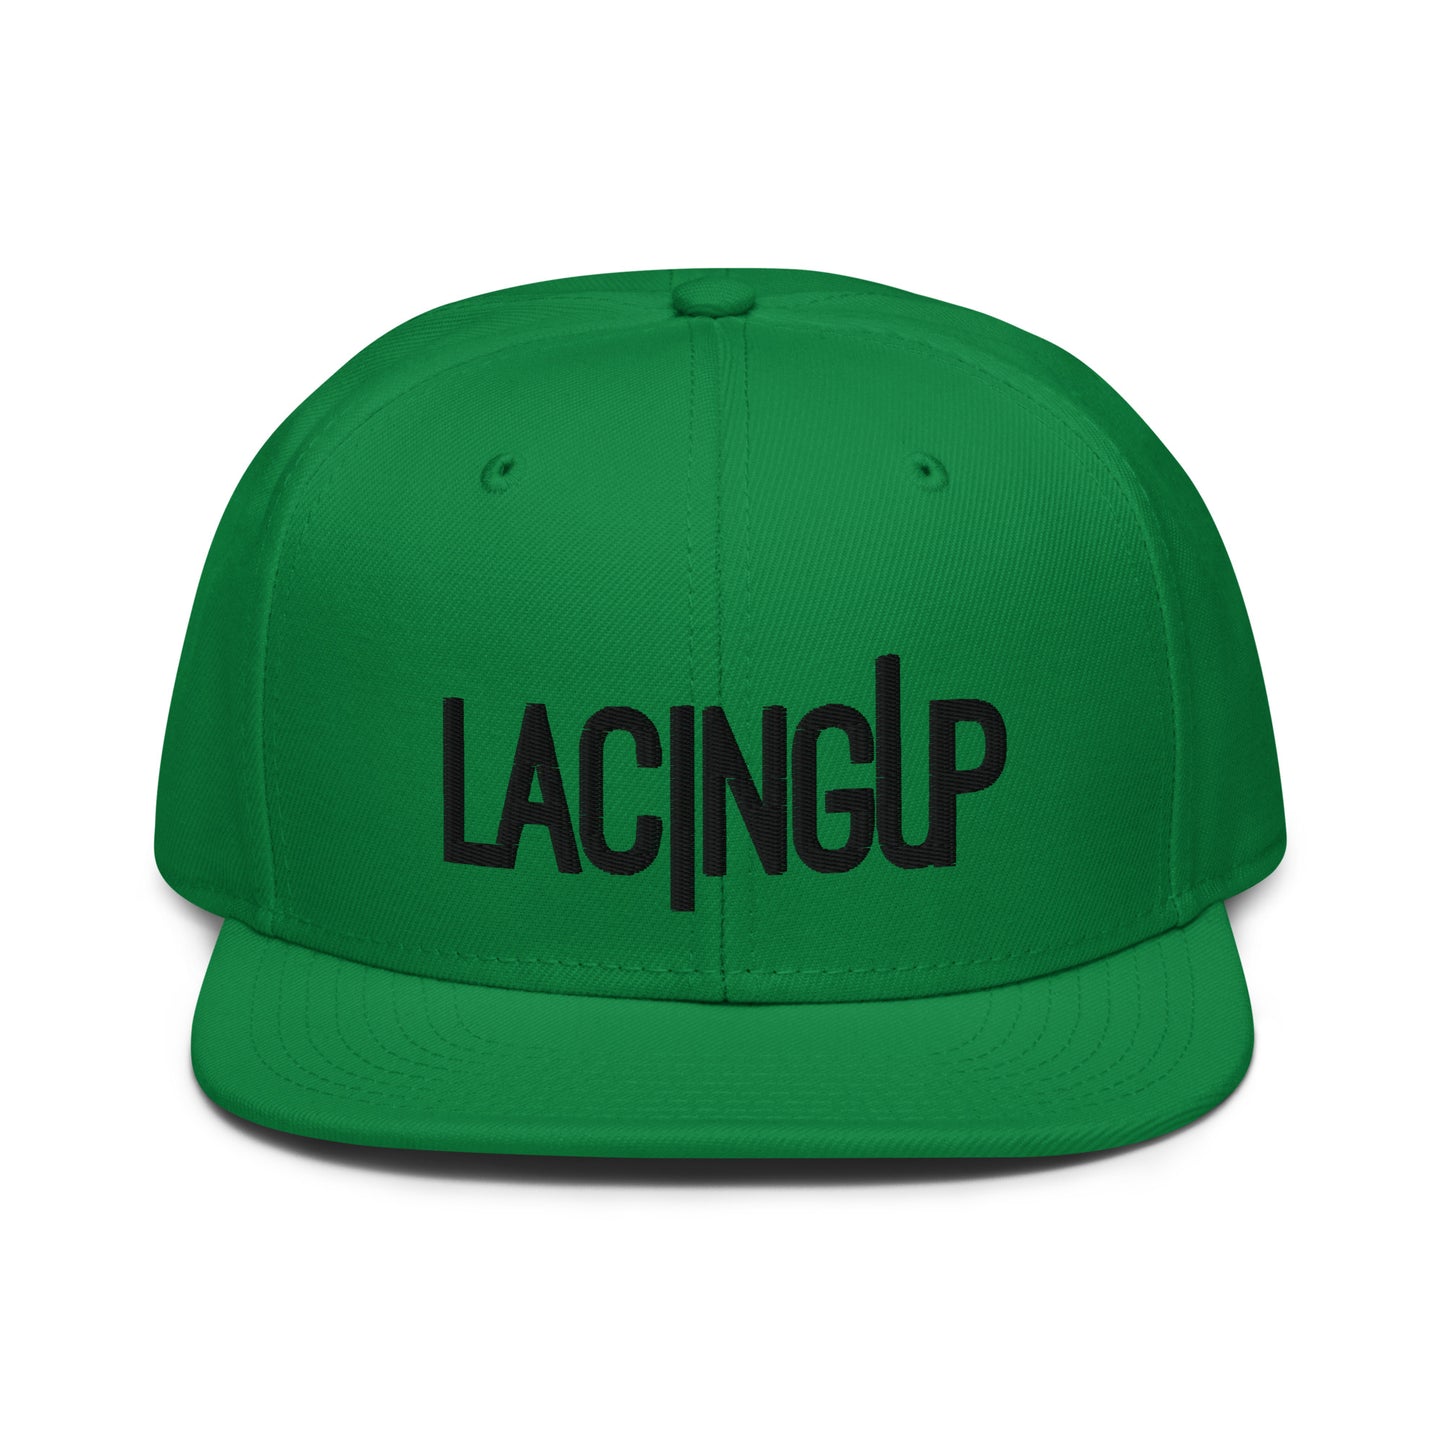 Lacing Up Green Snapback Hat